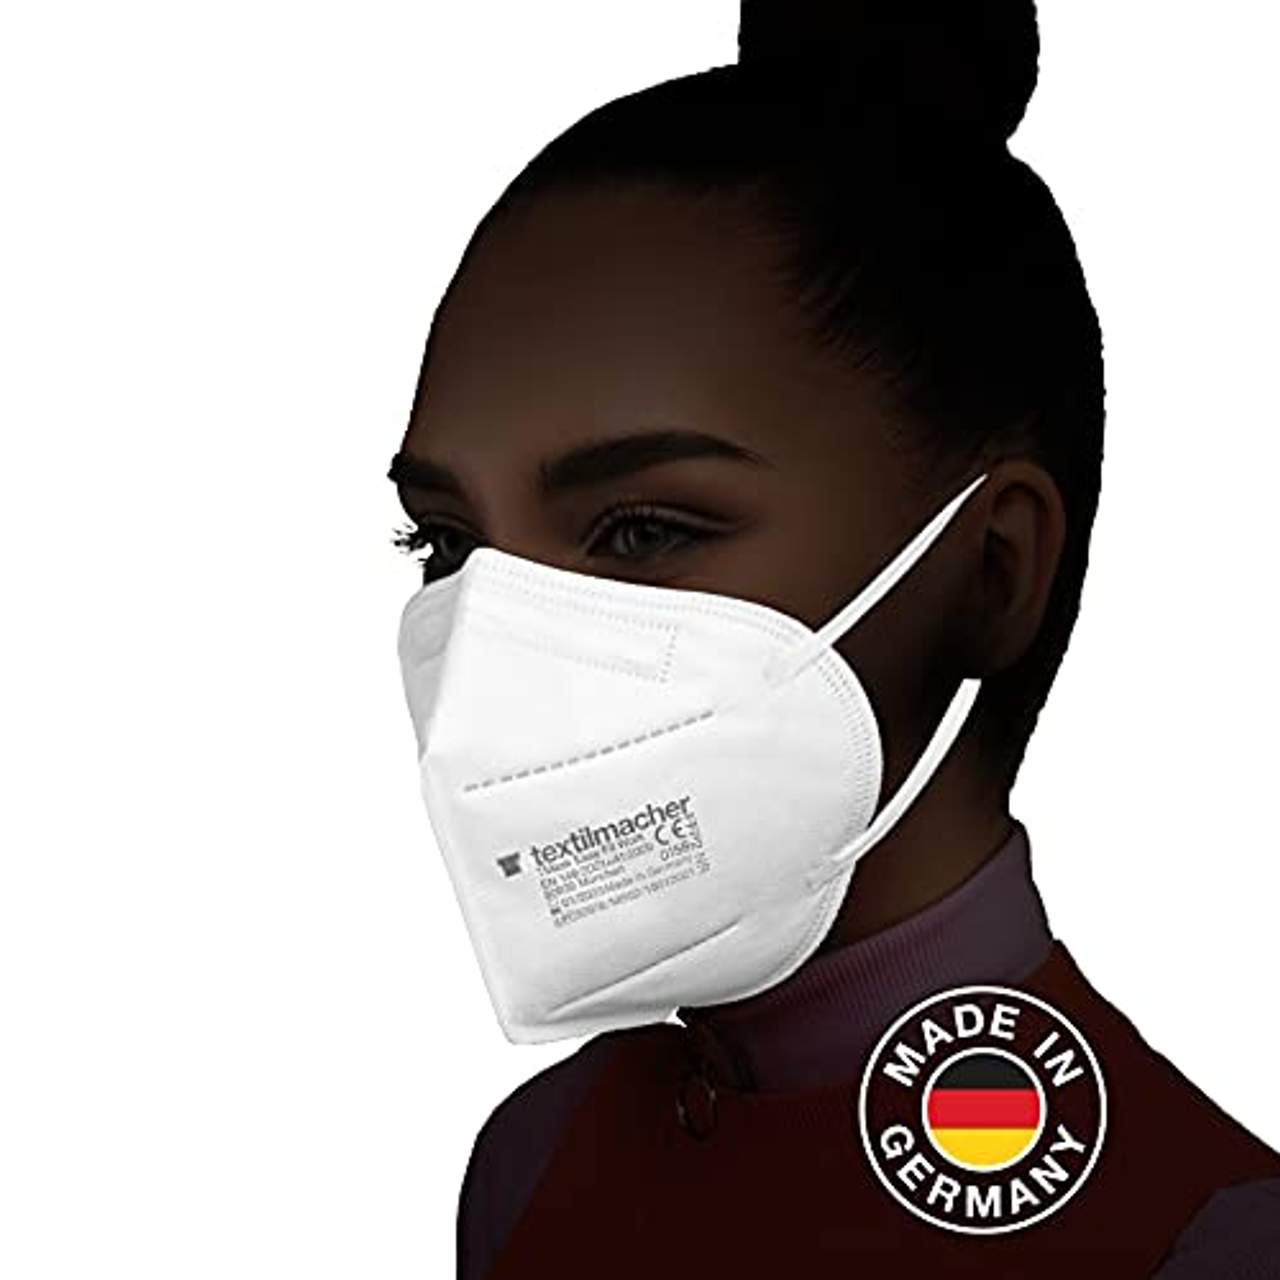 Textilmacher 5x FFP2 Maske Made in Germany